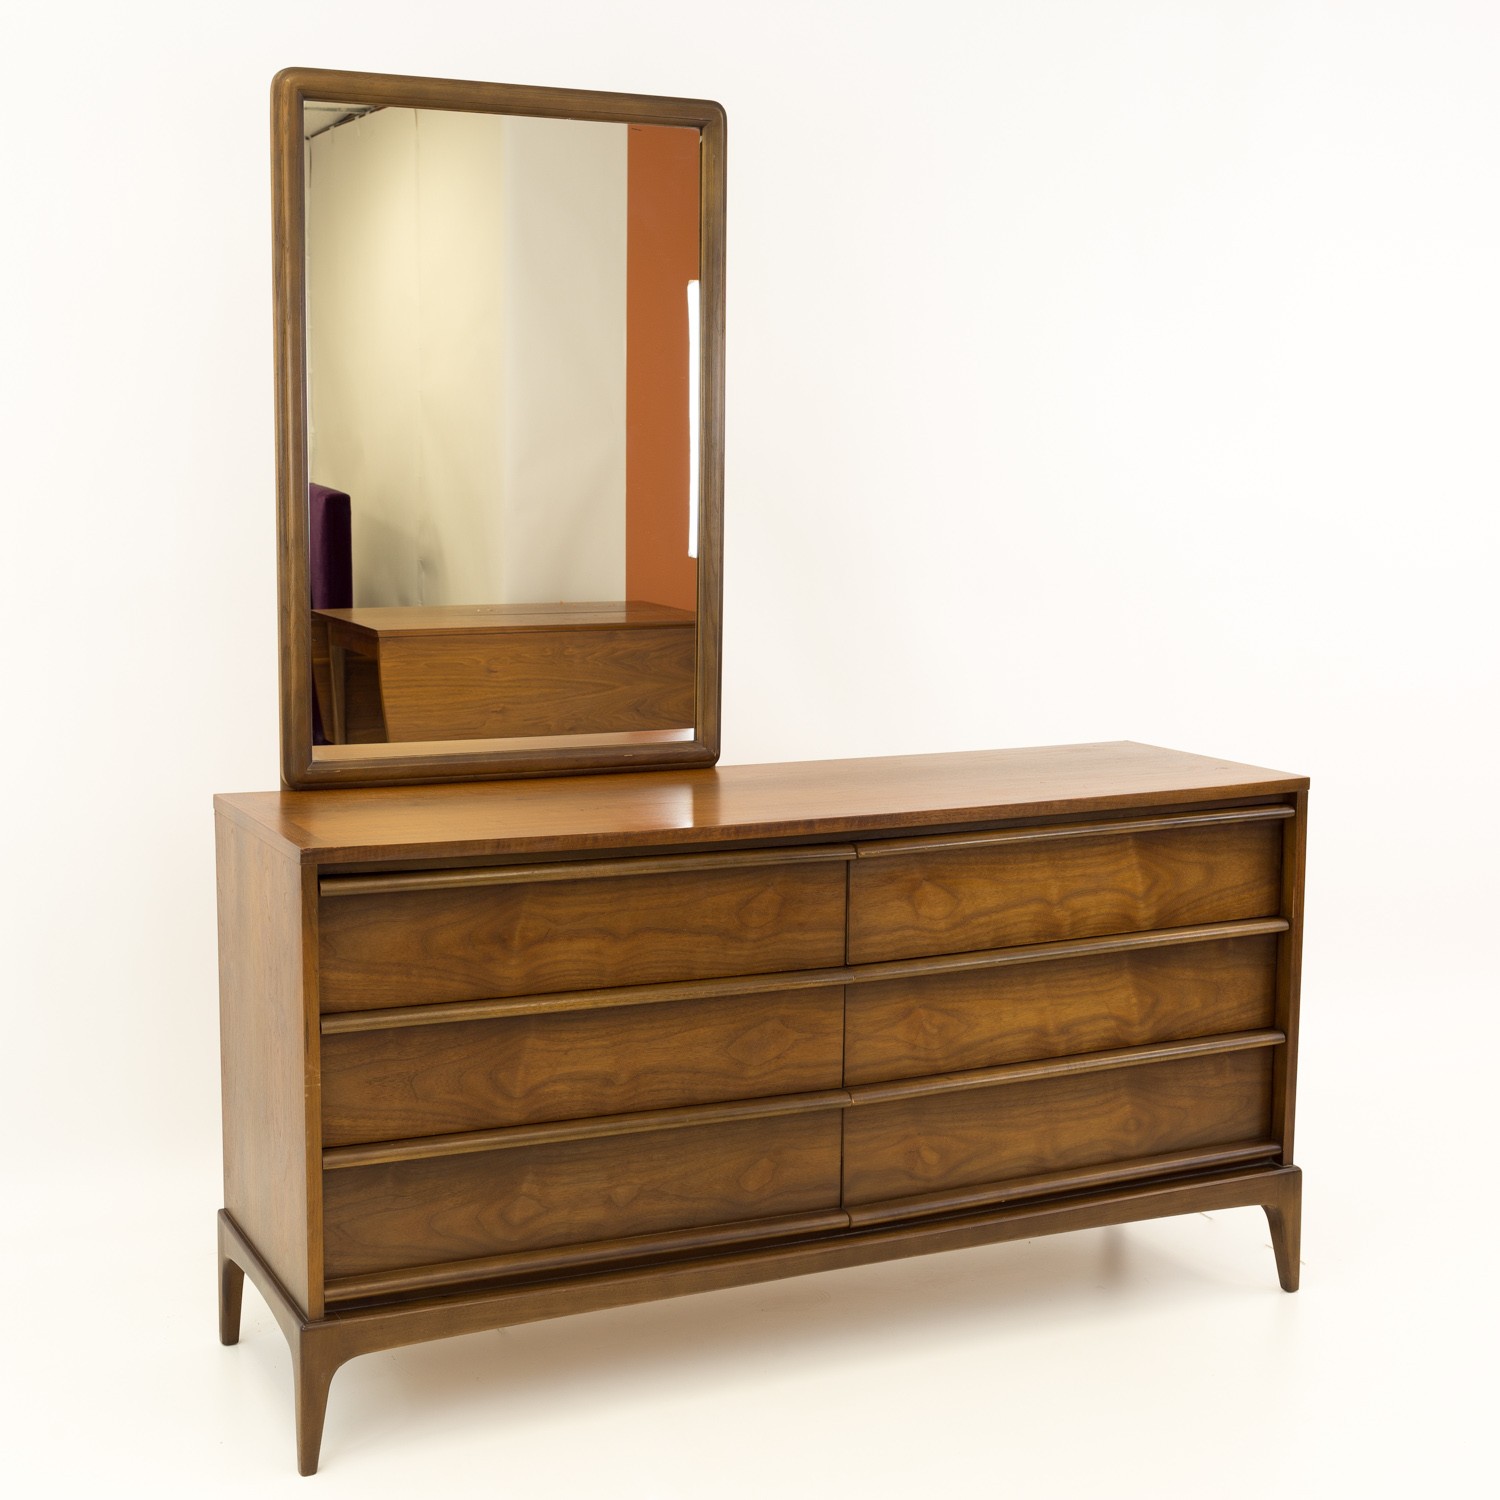 Paul Mccobb Style Lane Rhythm Mid Century Walnut 6 Drawer Lowboy Dresser with Mirror